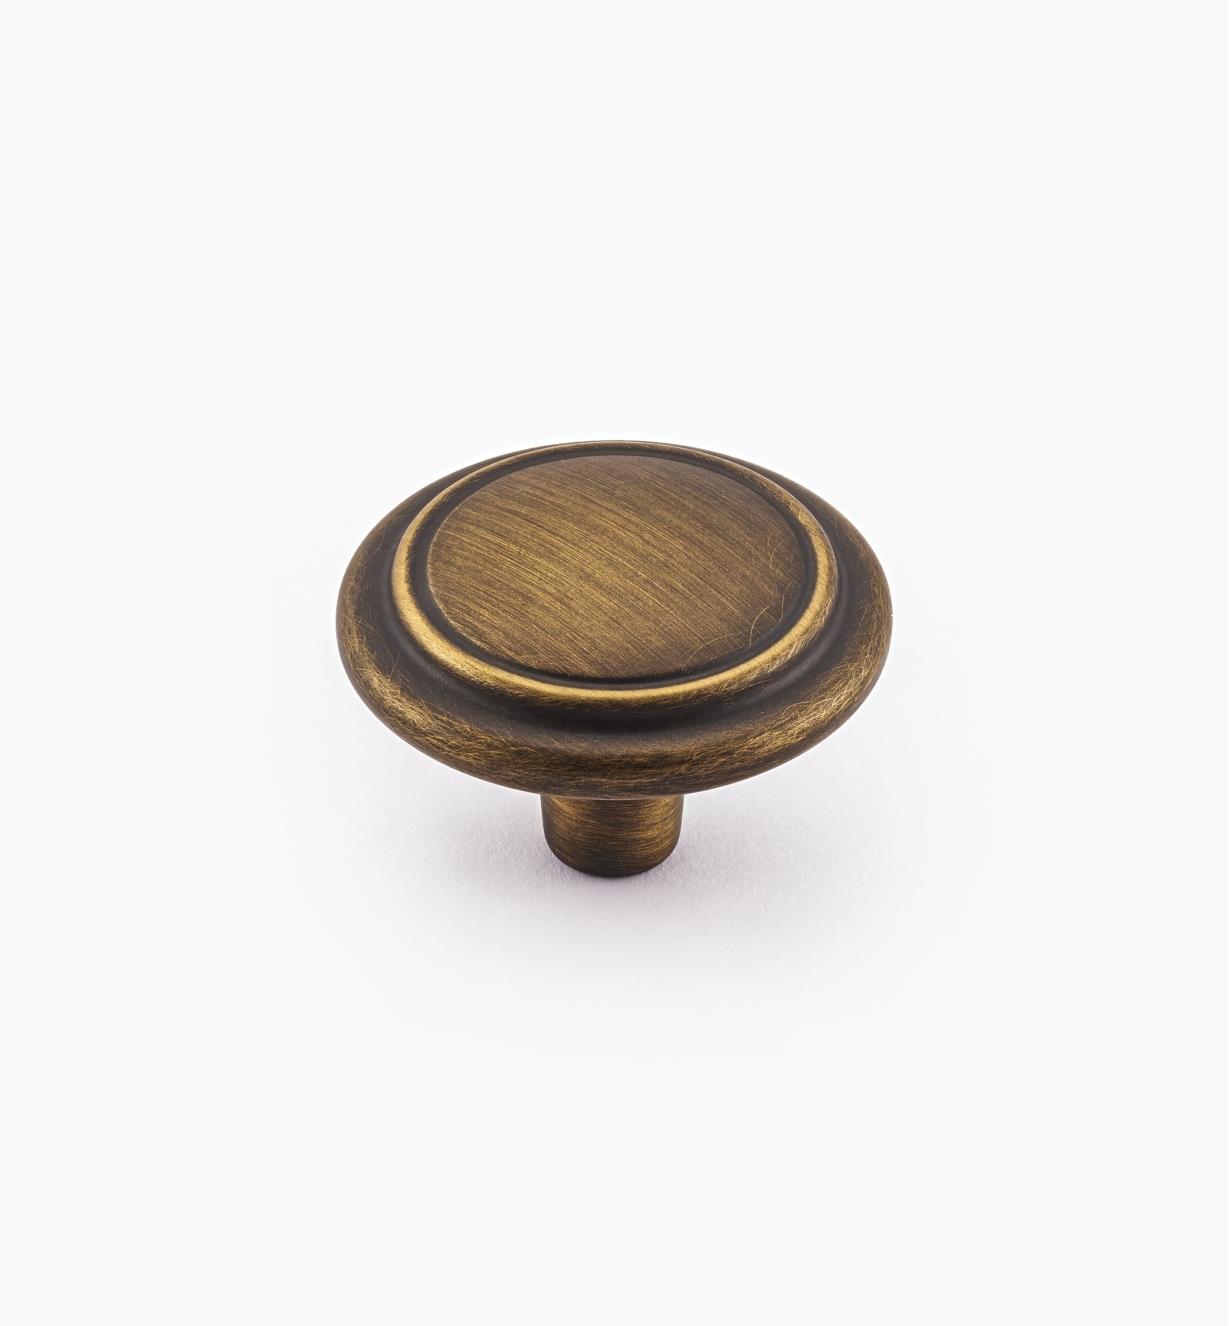 01W0611 - 32mm Antique Brass Knob